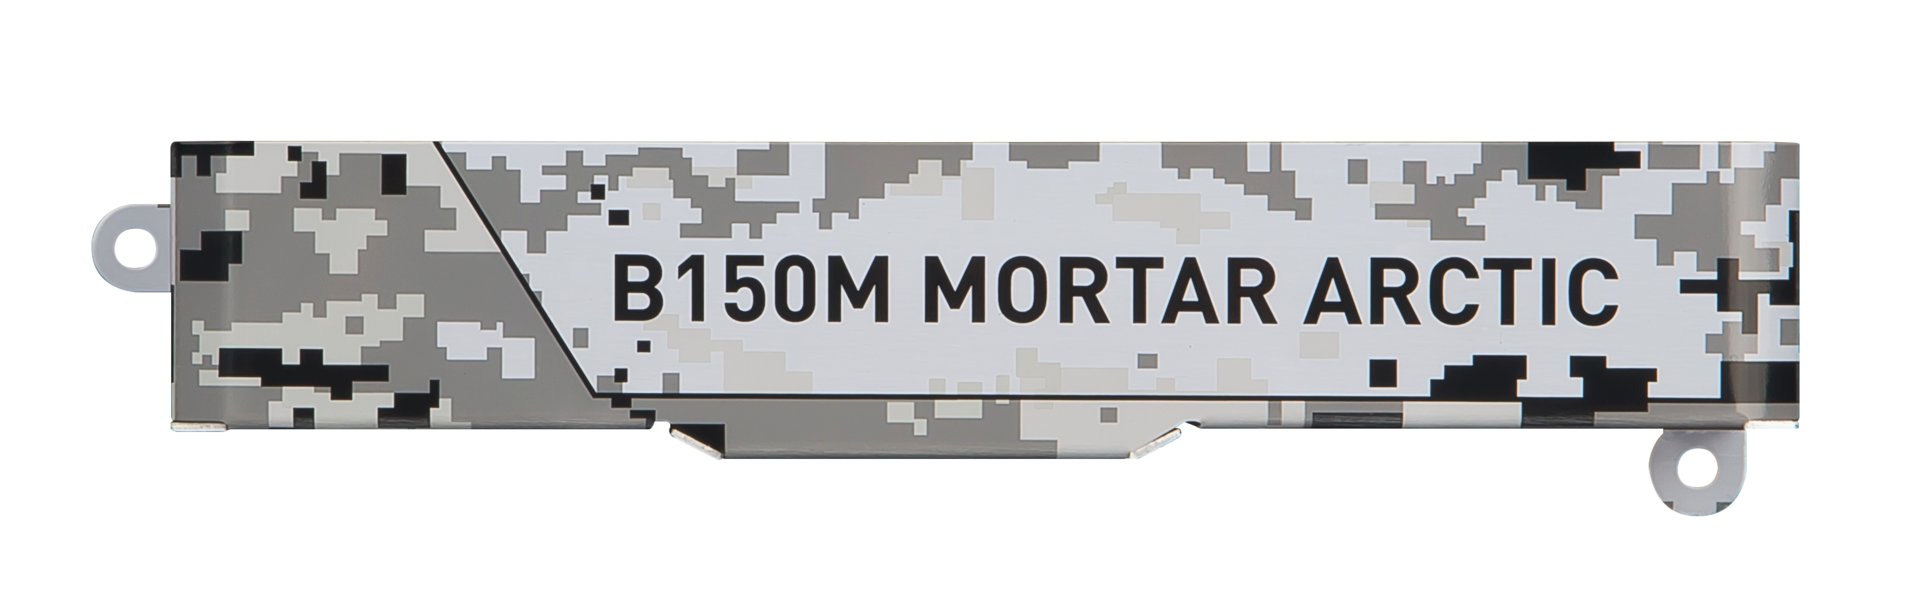 MSI B150M Mortar Arctic